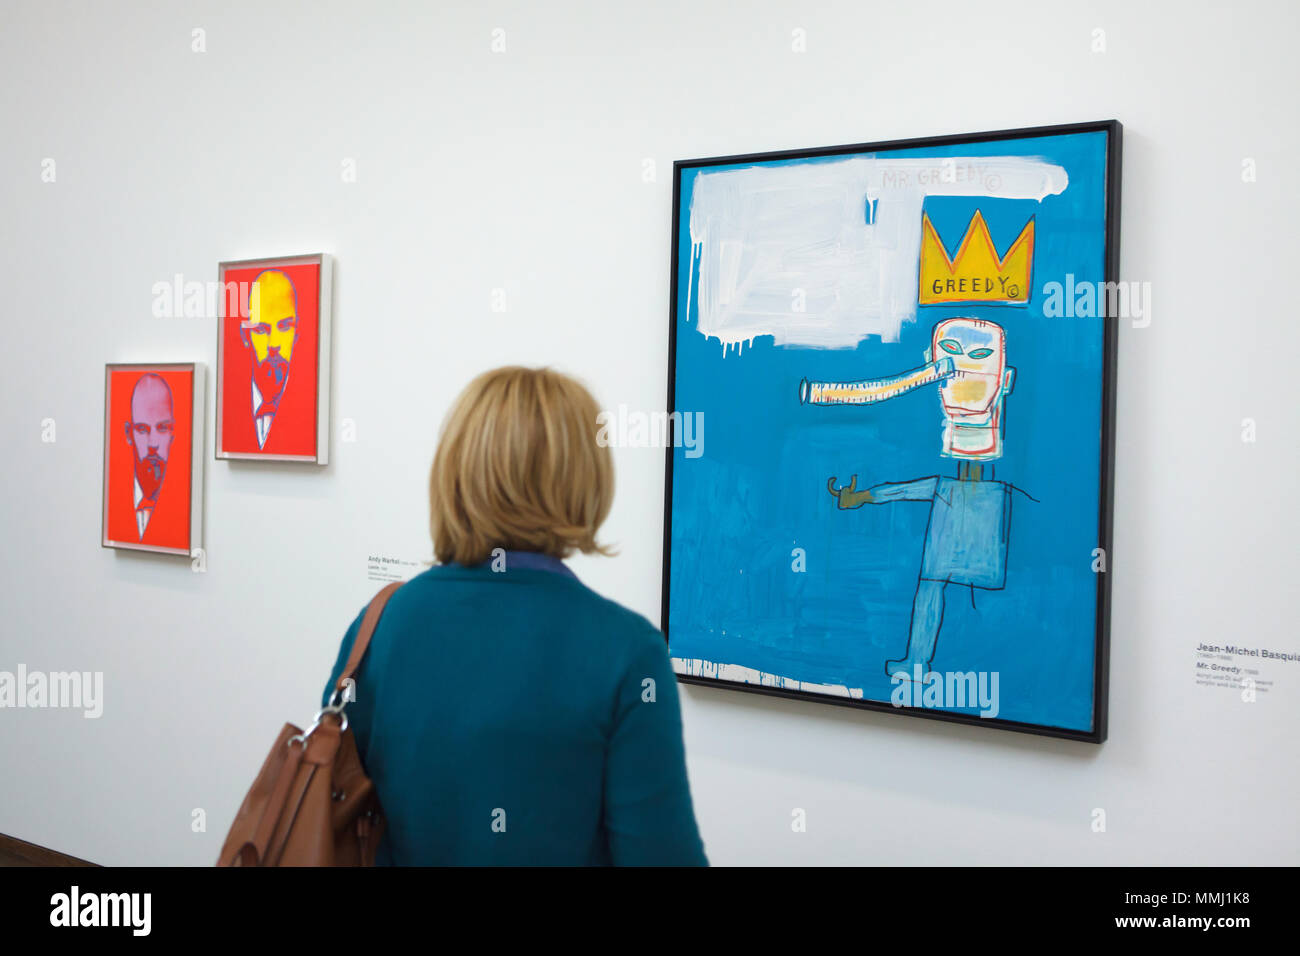 Visiteurs en face de la peinture "greedy" (1986) par l'artiste américain Jean-Michel Basquiat présentés à l'exposition 'WOW ! La Heidi Horten Collection' dans le Leopold Museum de Vienne, en Autriche. L'exposition présentant les chefs-d'oeuvre de l'une des plus impressionnantes collections privées d'Europe s'exécute jusqu'à 29 juillet 2018. Lénine 'peintures' par le peintre américain Andy Warhol sont vus dans l'arrière-plan. Banque D'Images